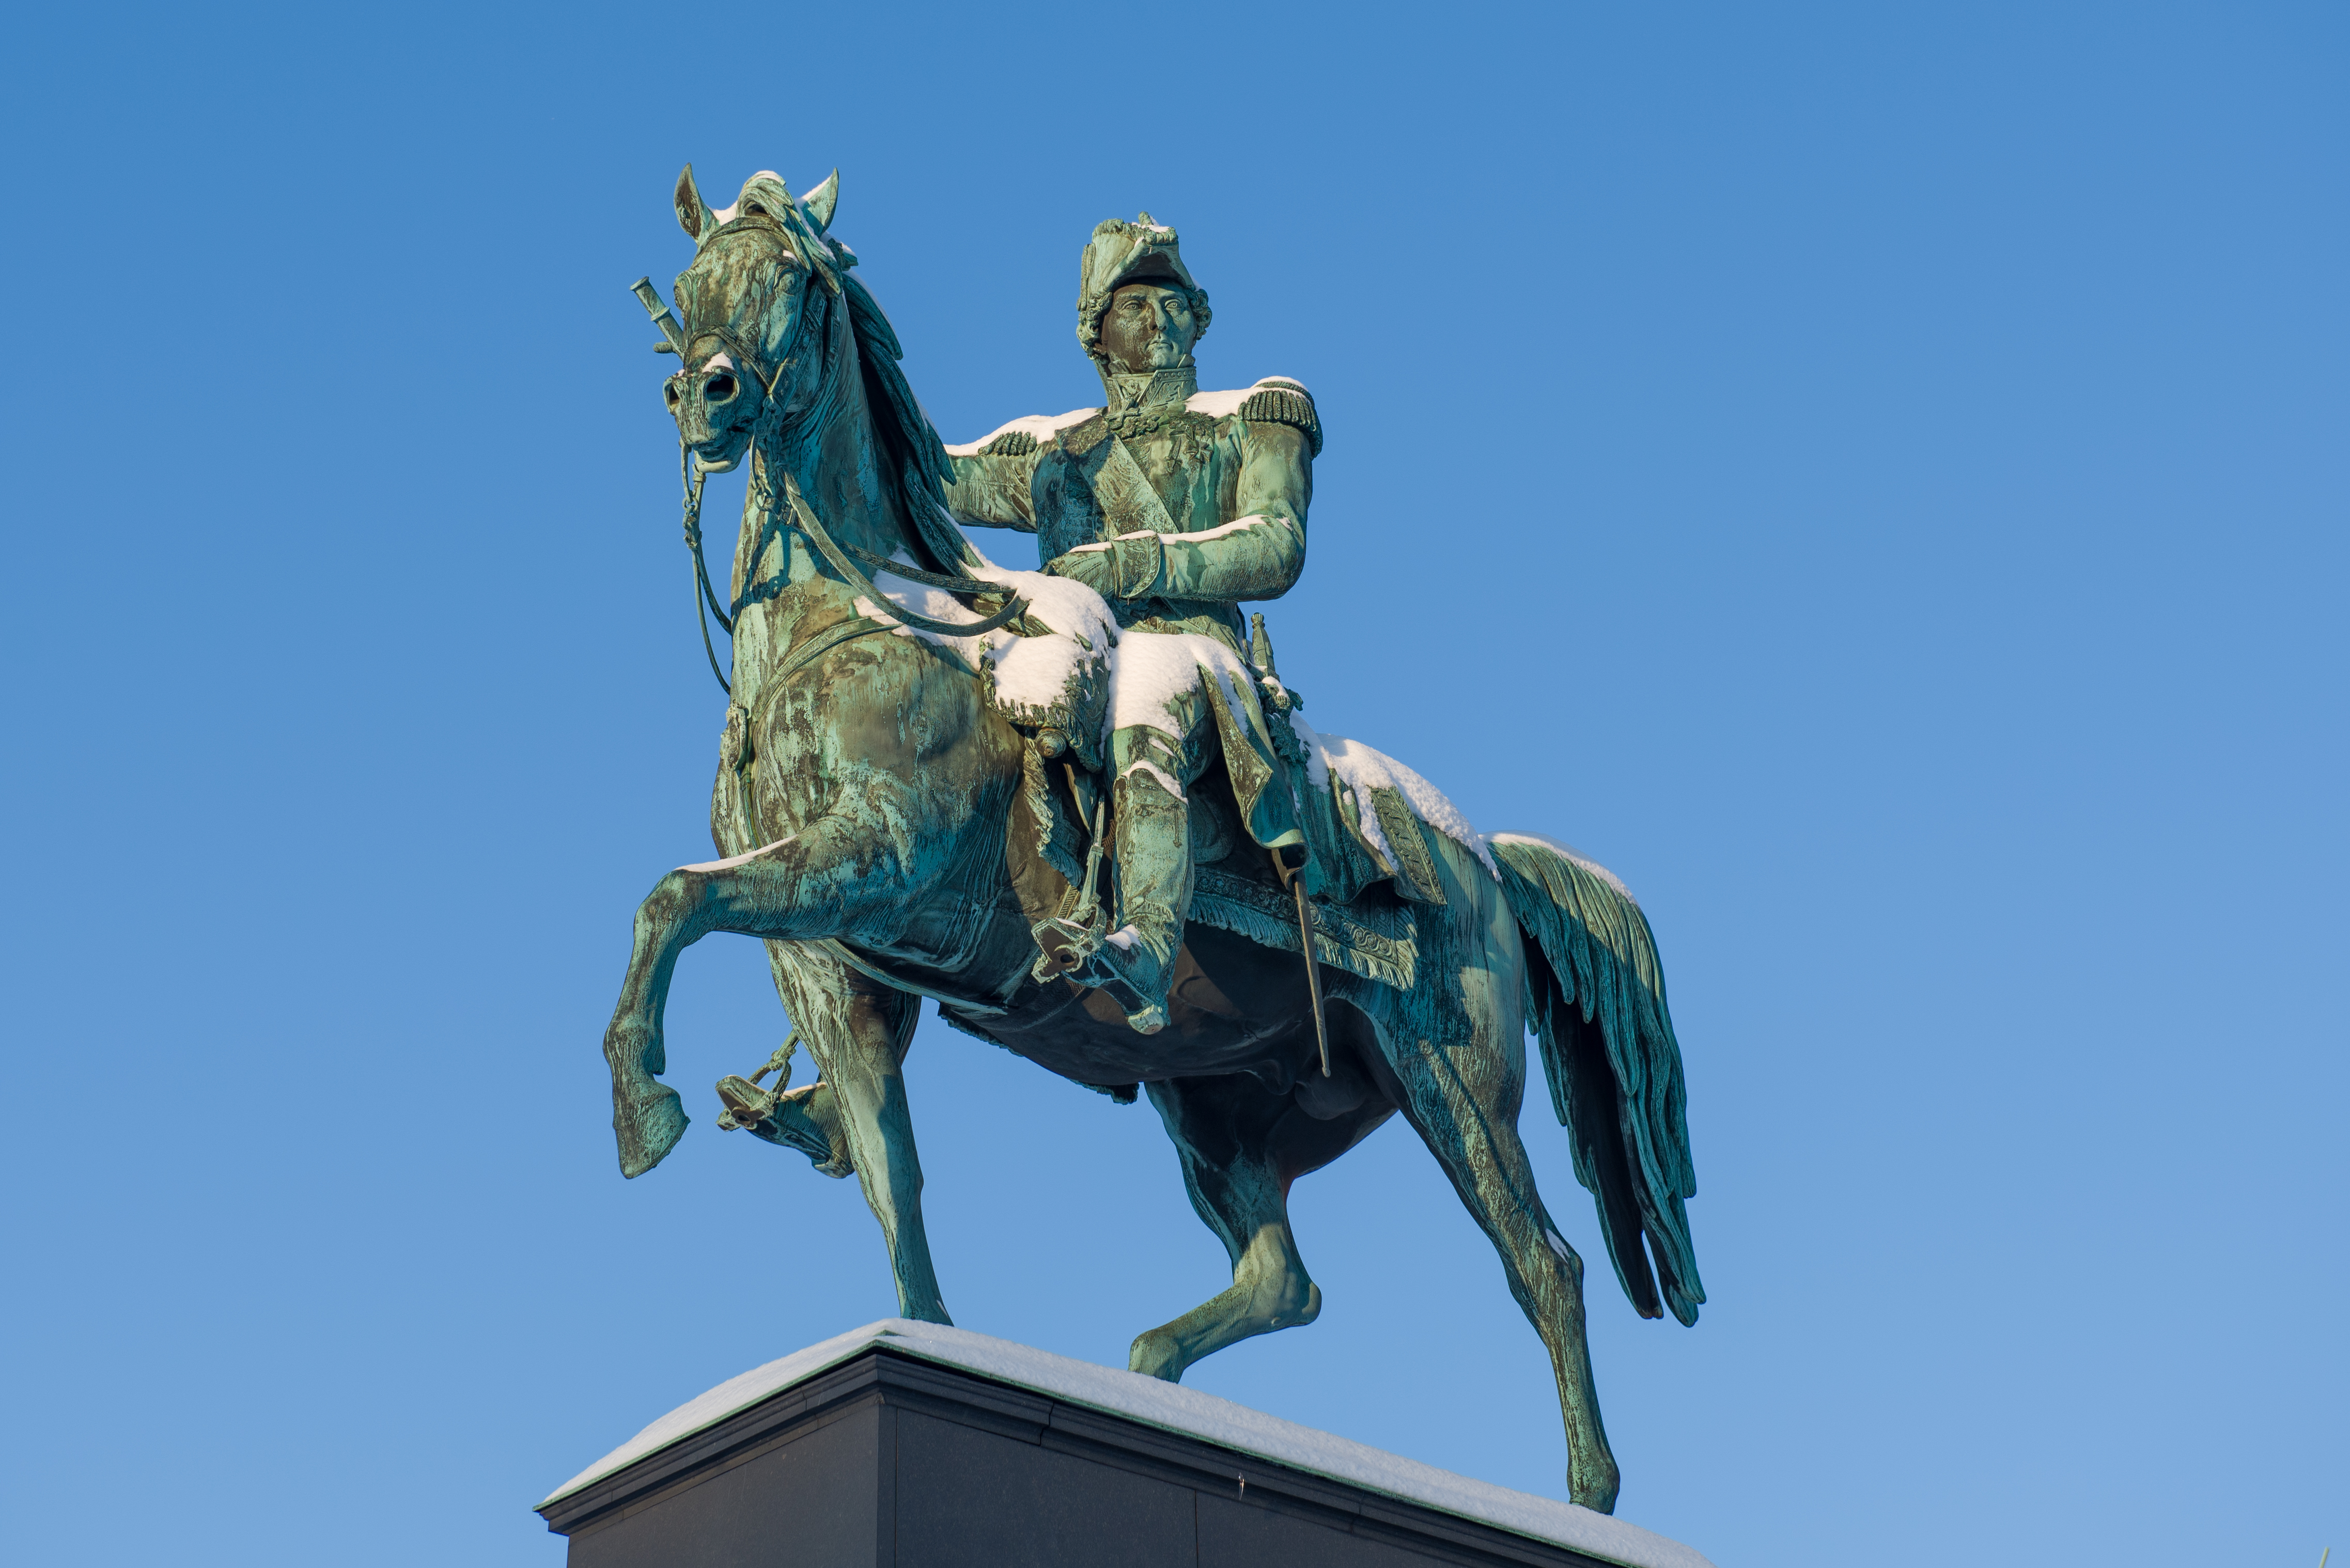 Carl XIV John statue at Slussen December 2012